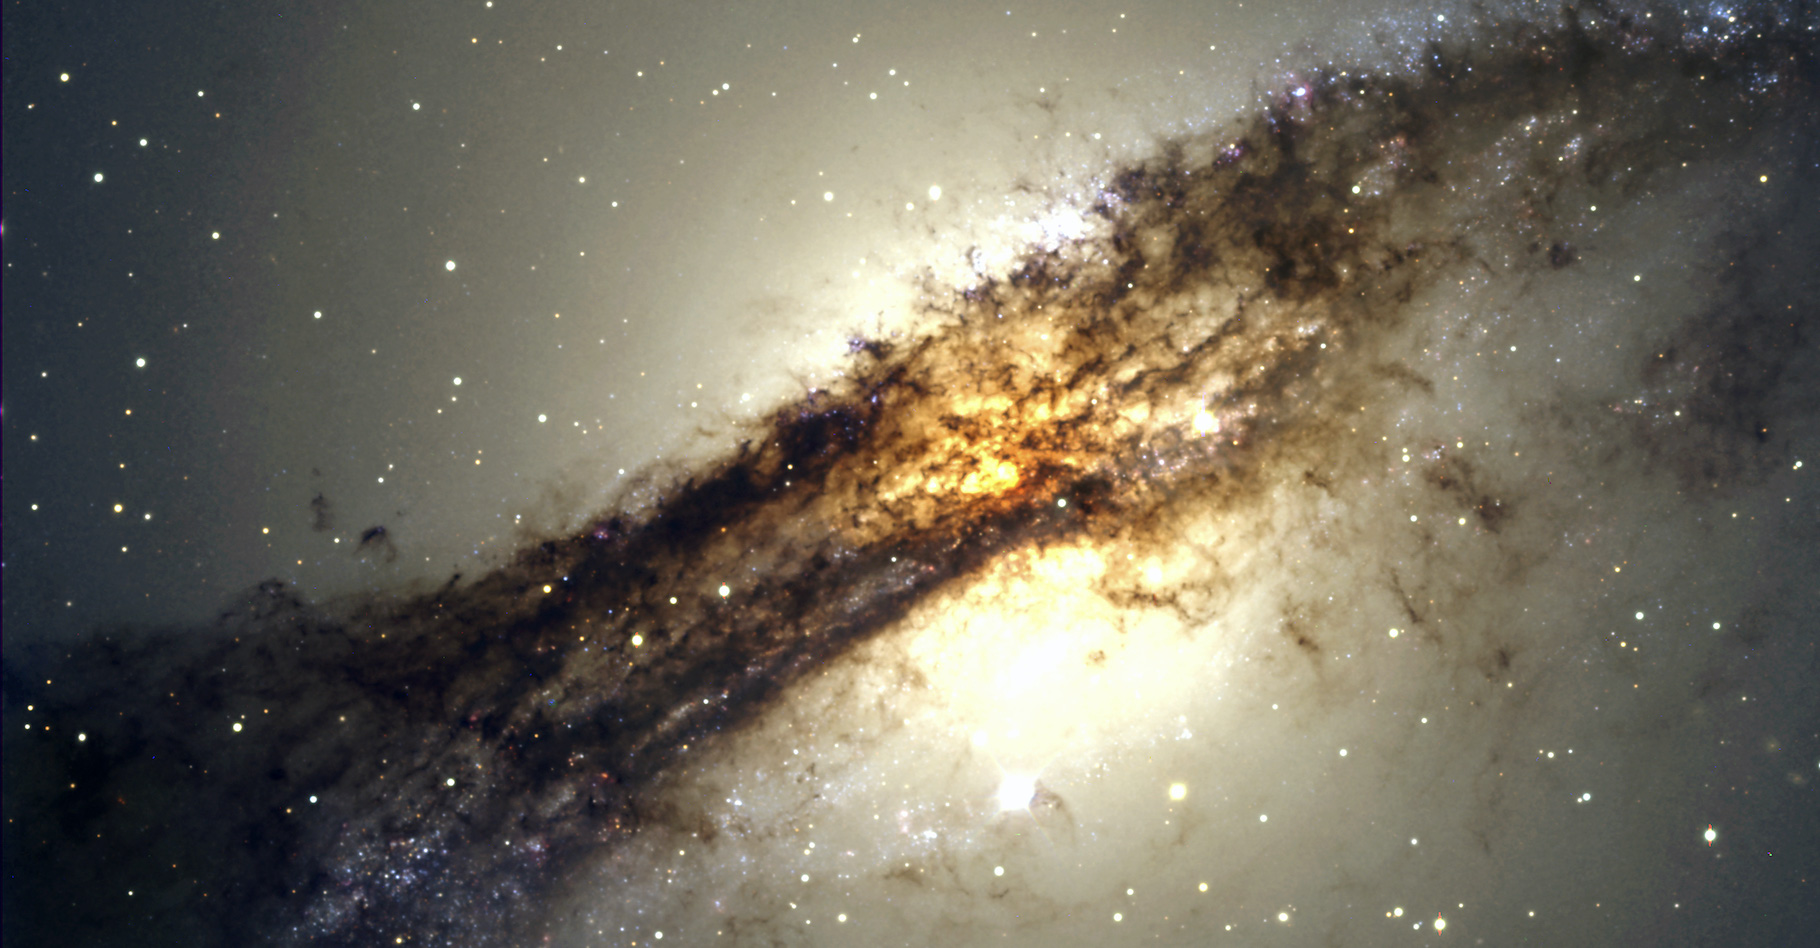 La galaxie Centaurus A (NGC 5128) est un objet intéressant à étudier pour les astronomes à différentes longueurs d’onde. © ESO